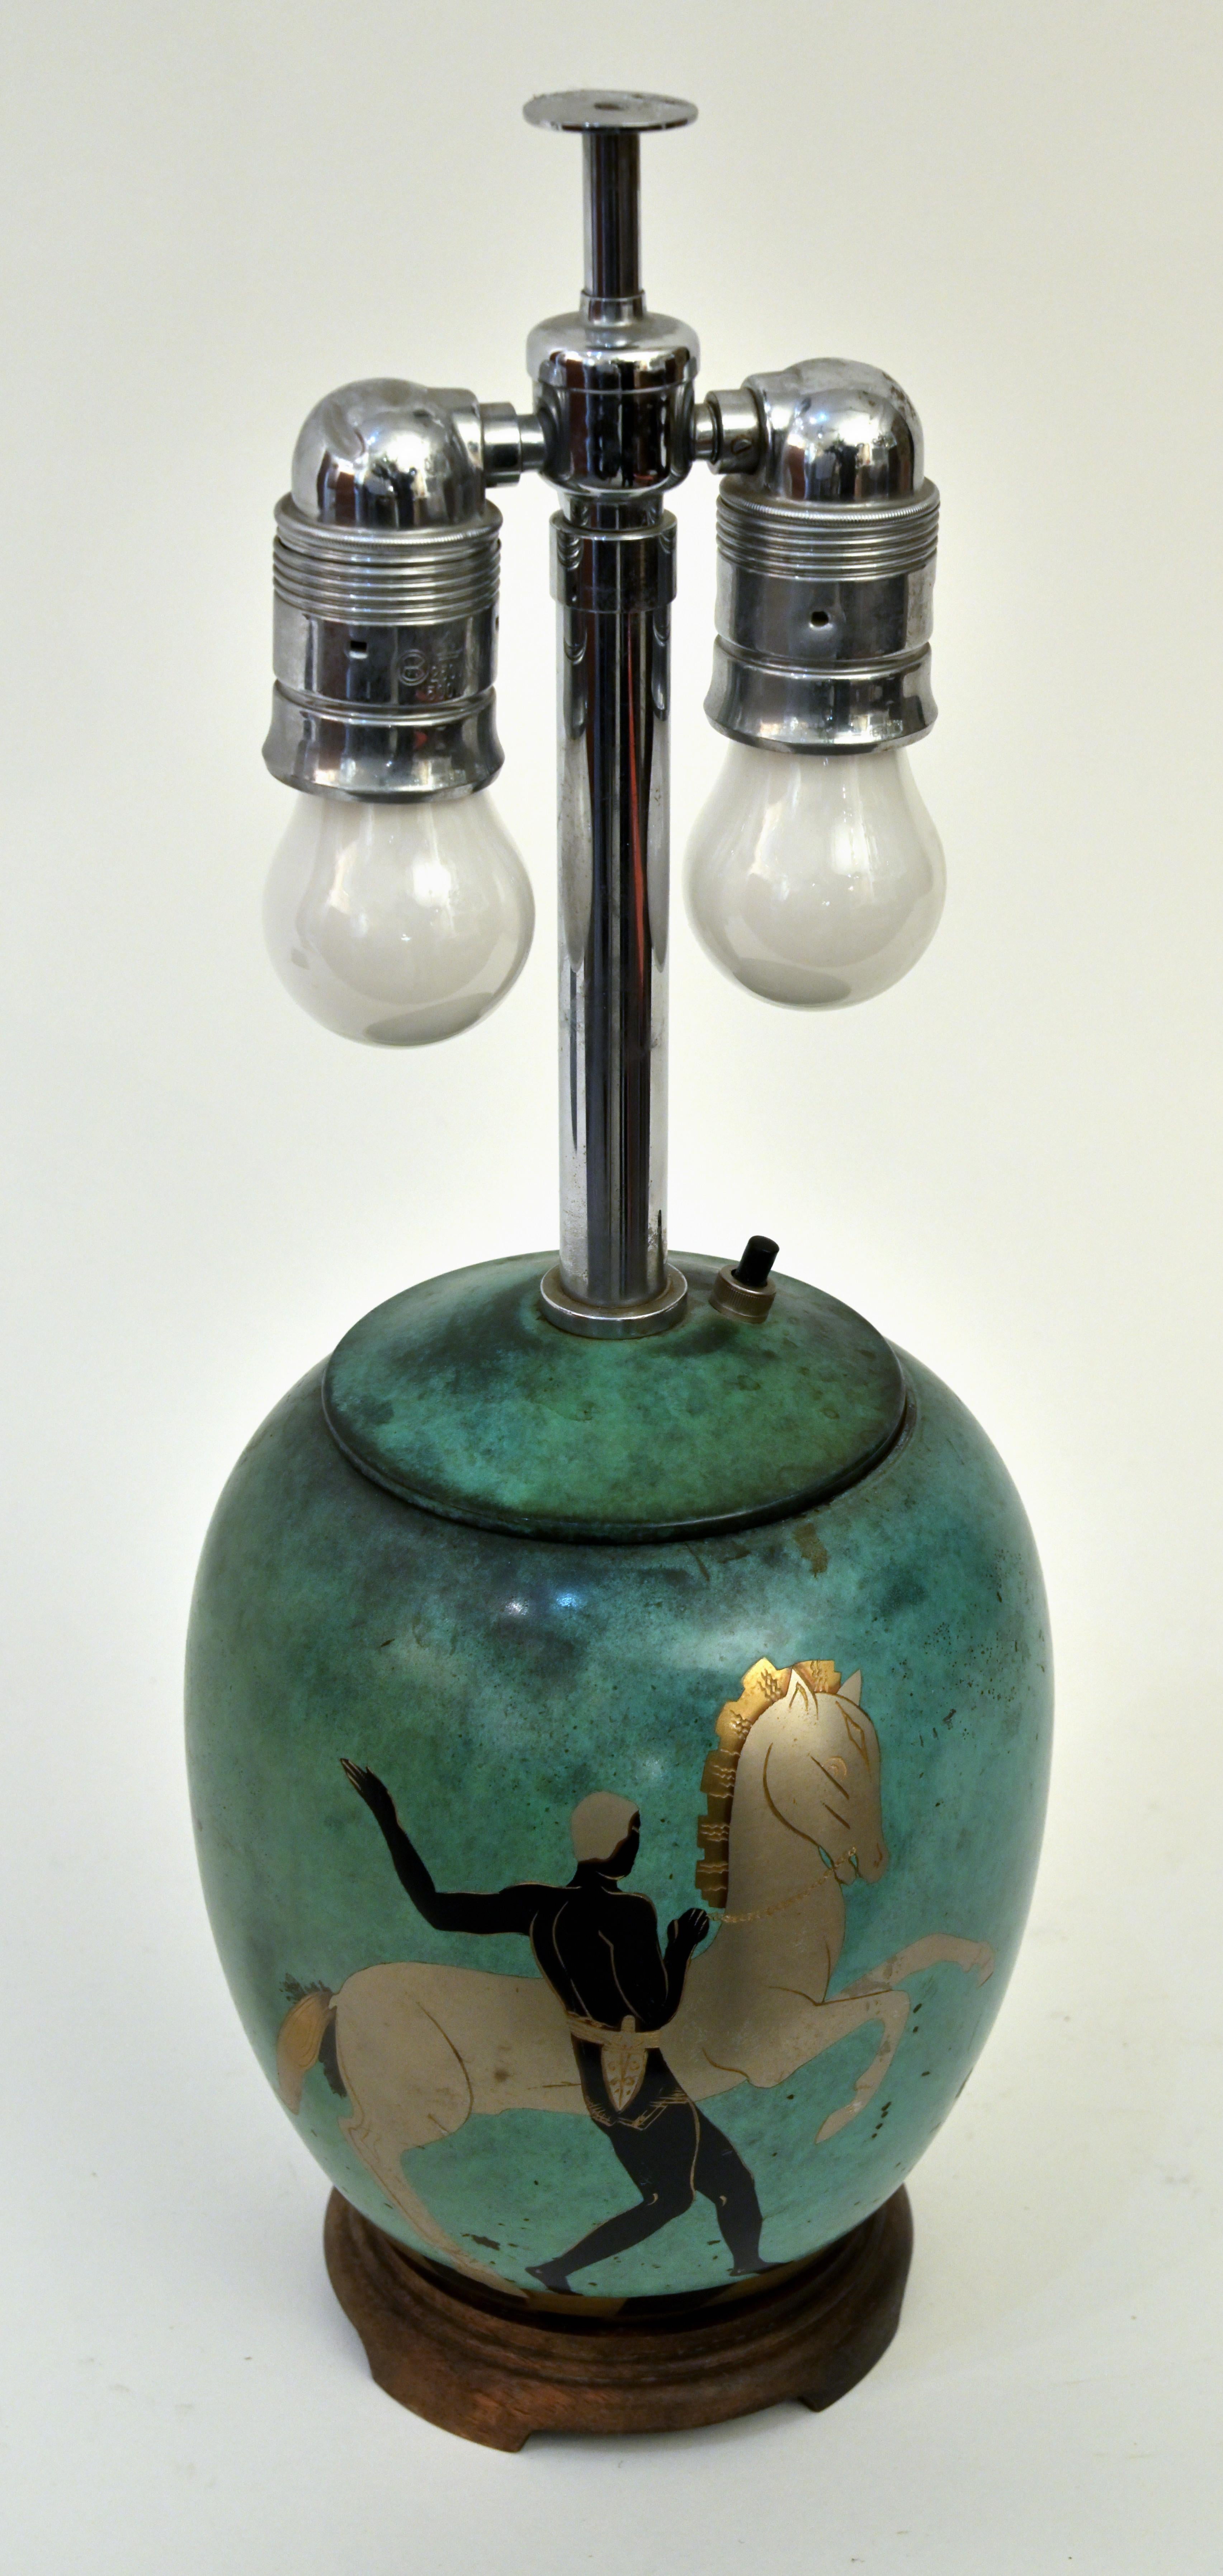 Eine Verdigris-Tischlampe aus Metall mit griechischen Motiven eines Mannes mit seinem Pferd, das sich dynamisch über die Oberfläche bewegt. Hergestellt von der Firma WMF, einem deutschen Geschirrhersteller, der 1853 in Geislingen an der Steige